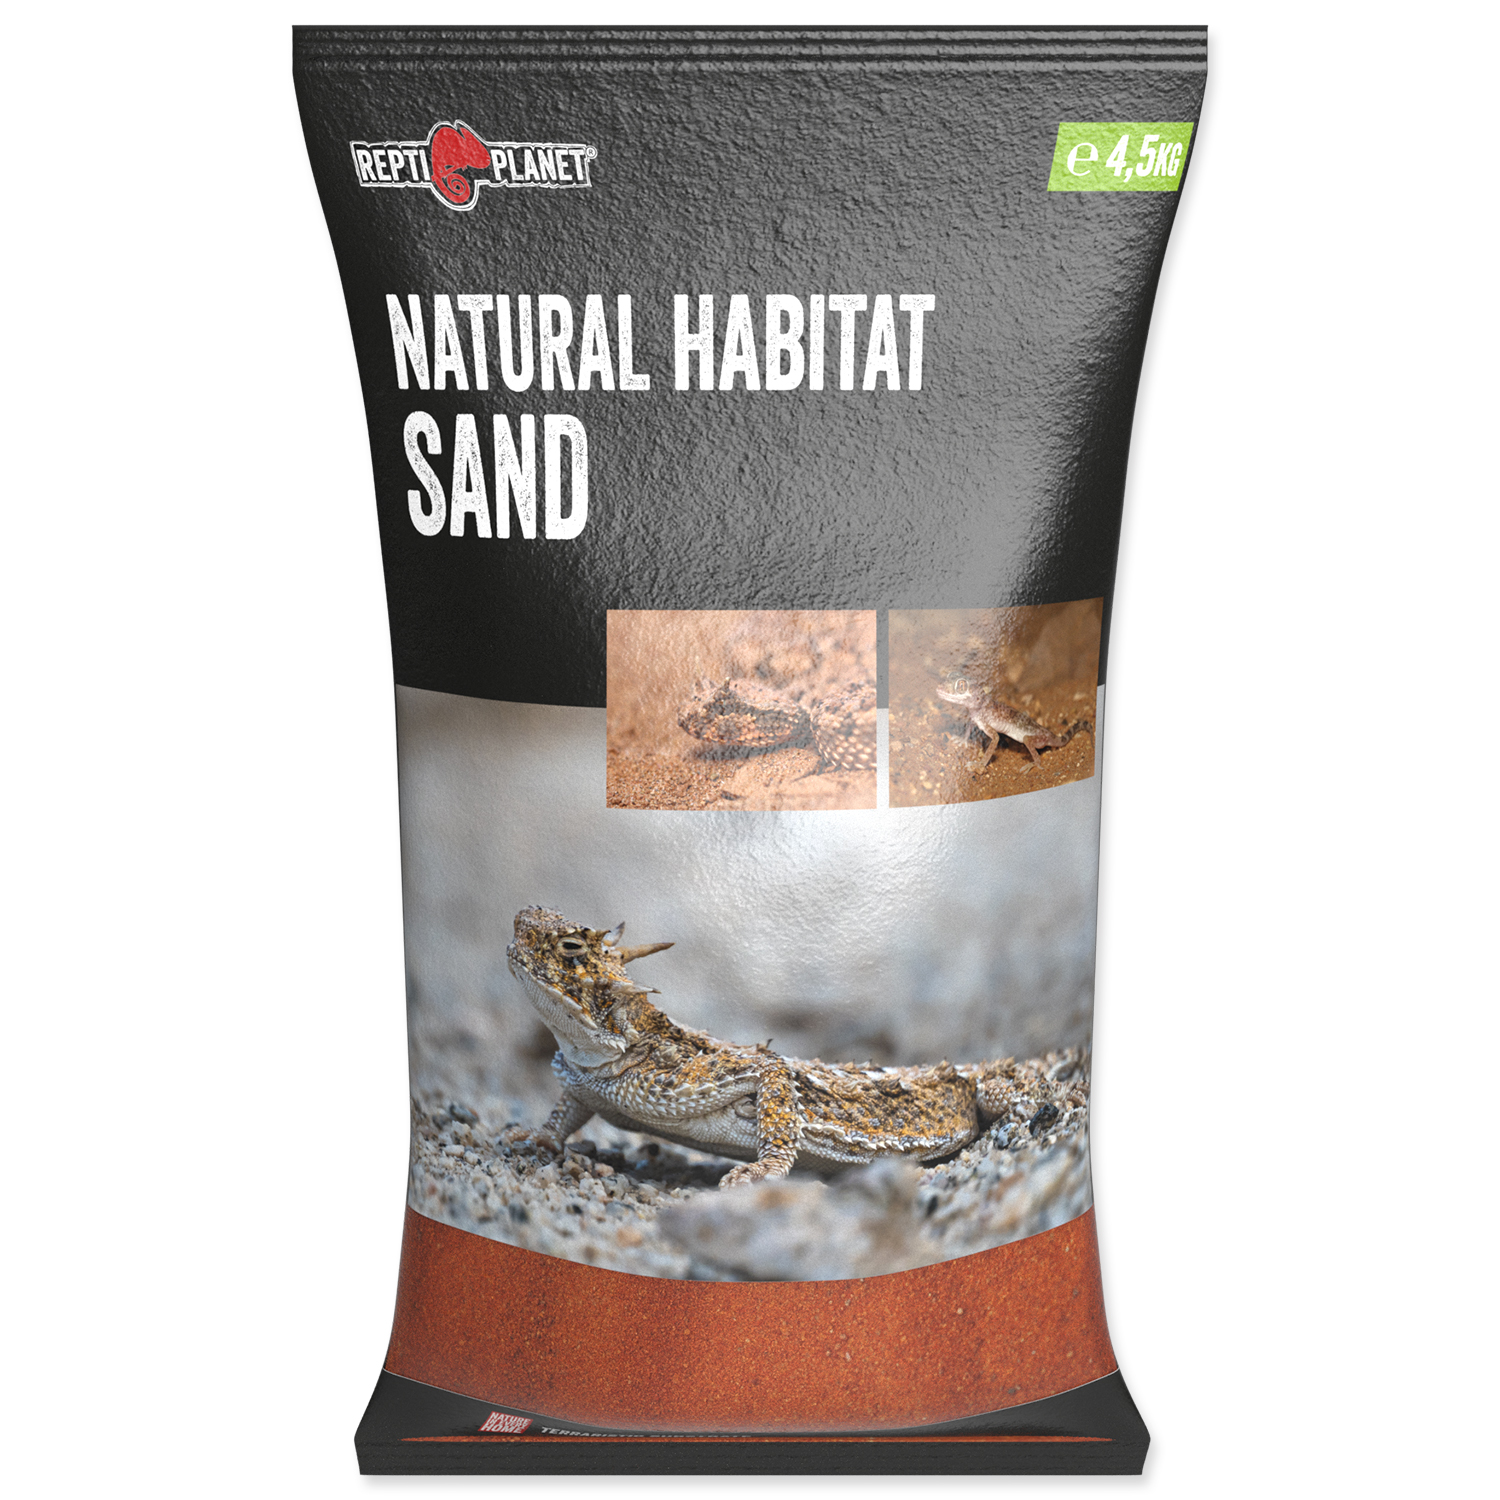 Repti Planet Natural Habitat Sand